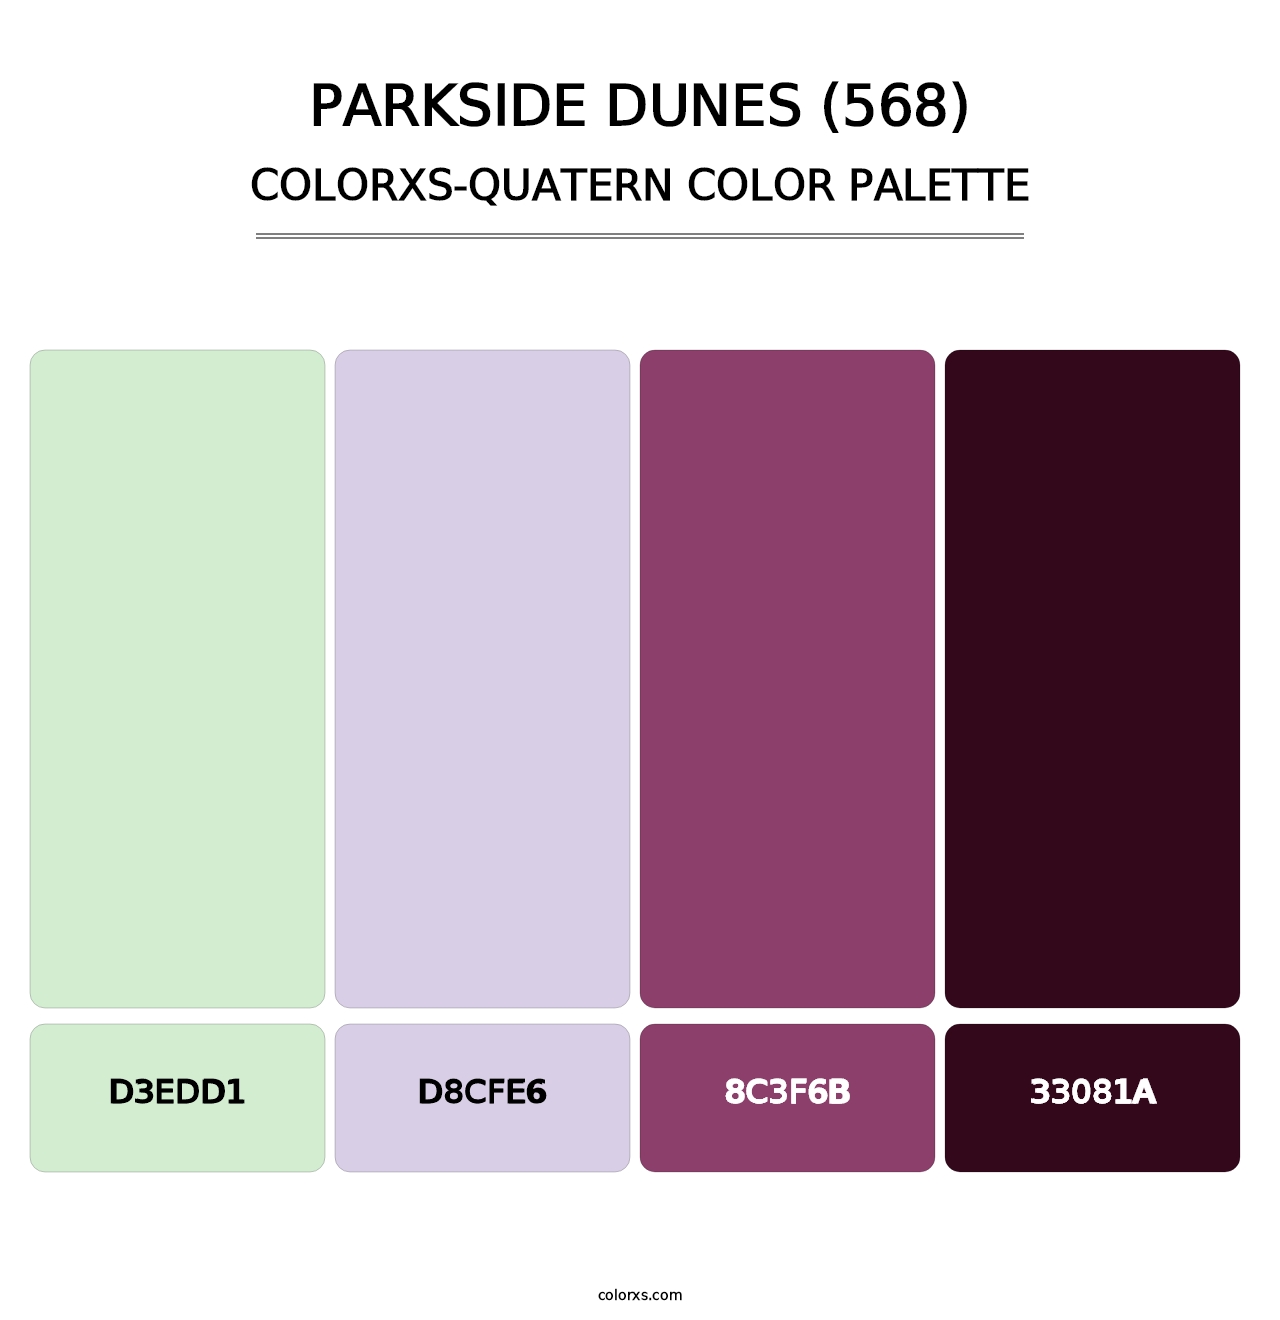 Parkside Dunes (568) - Colorxs Quatern Palette